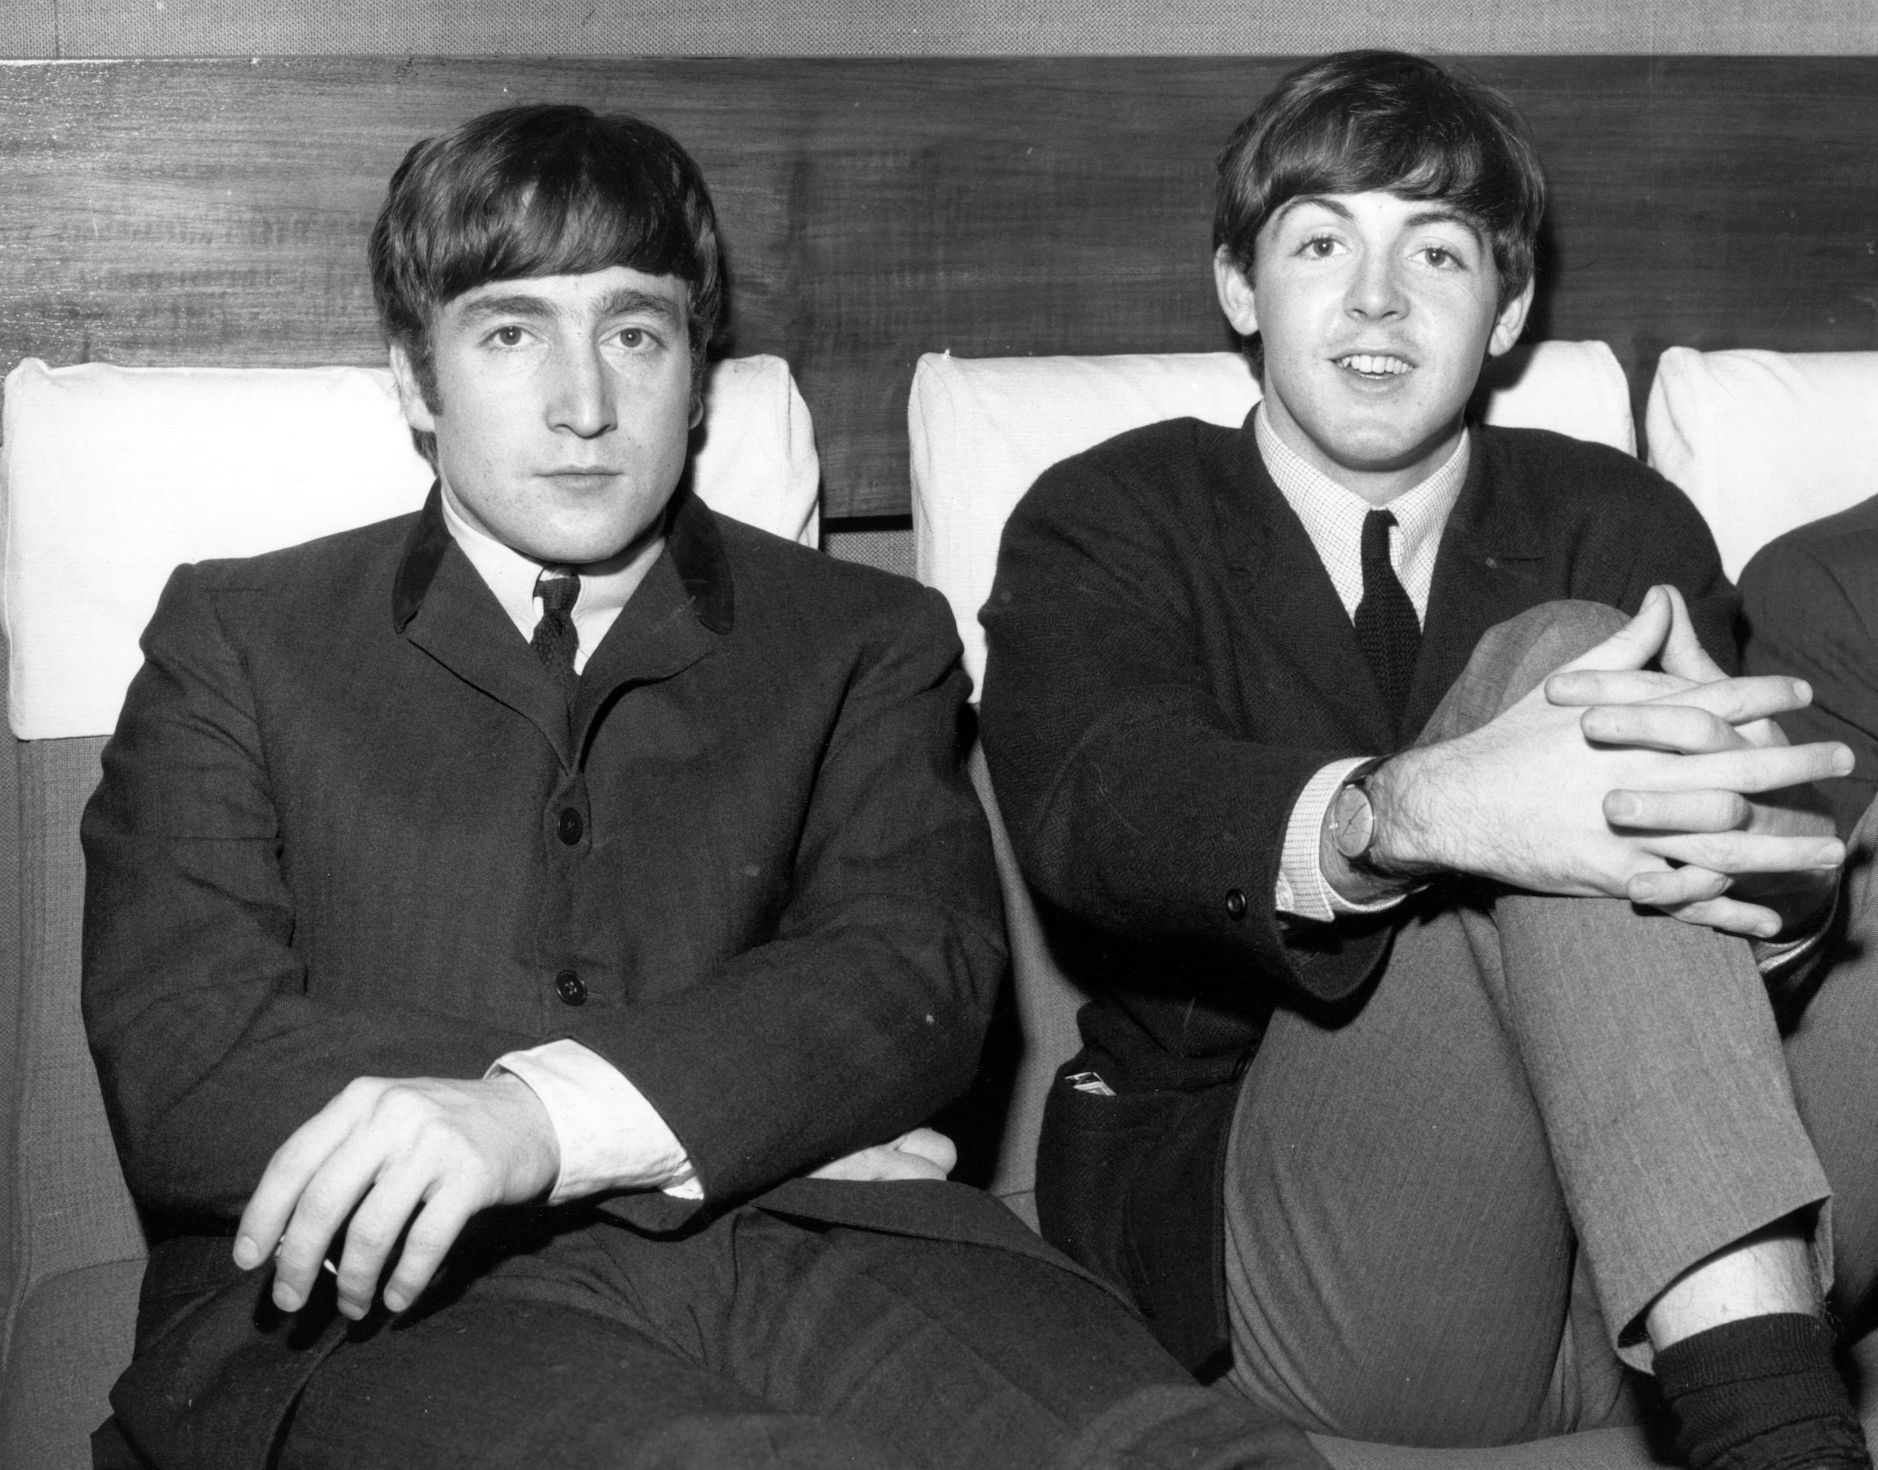 John Lennon and Paul McCartney of The Beatles in 1963